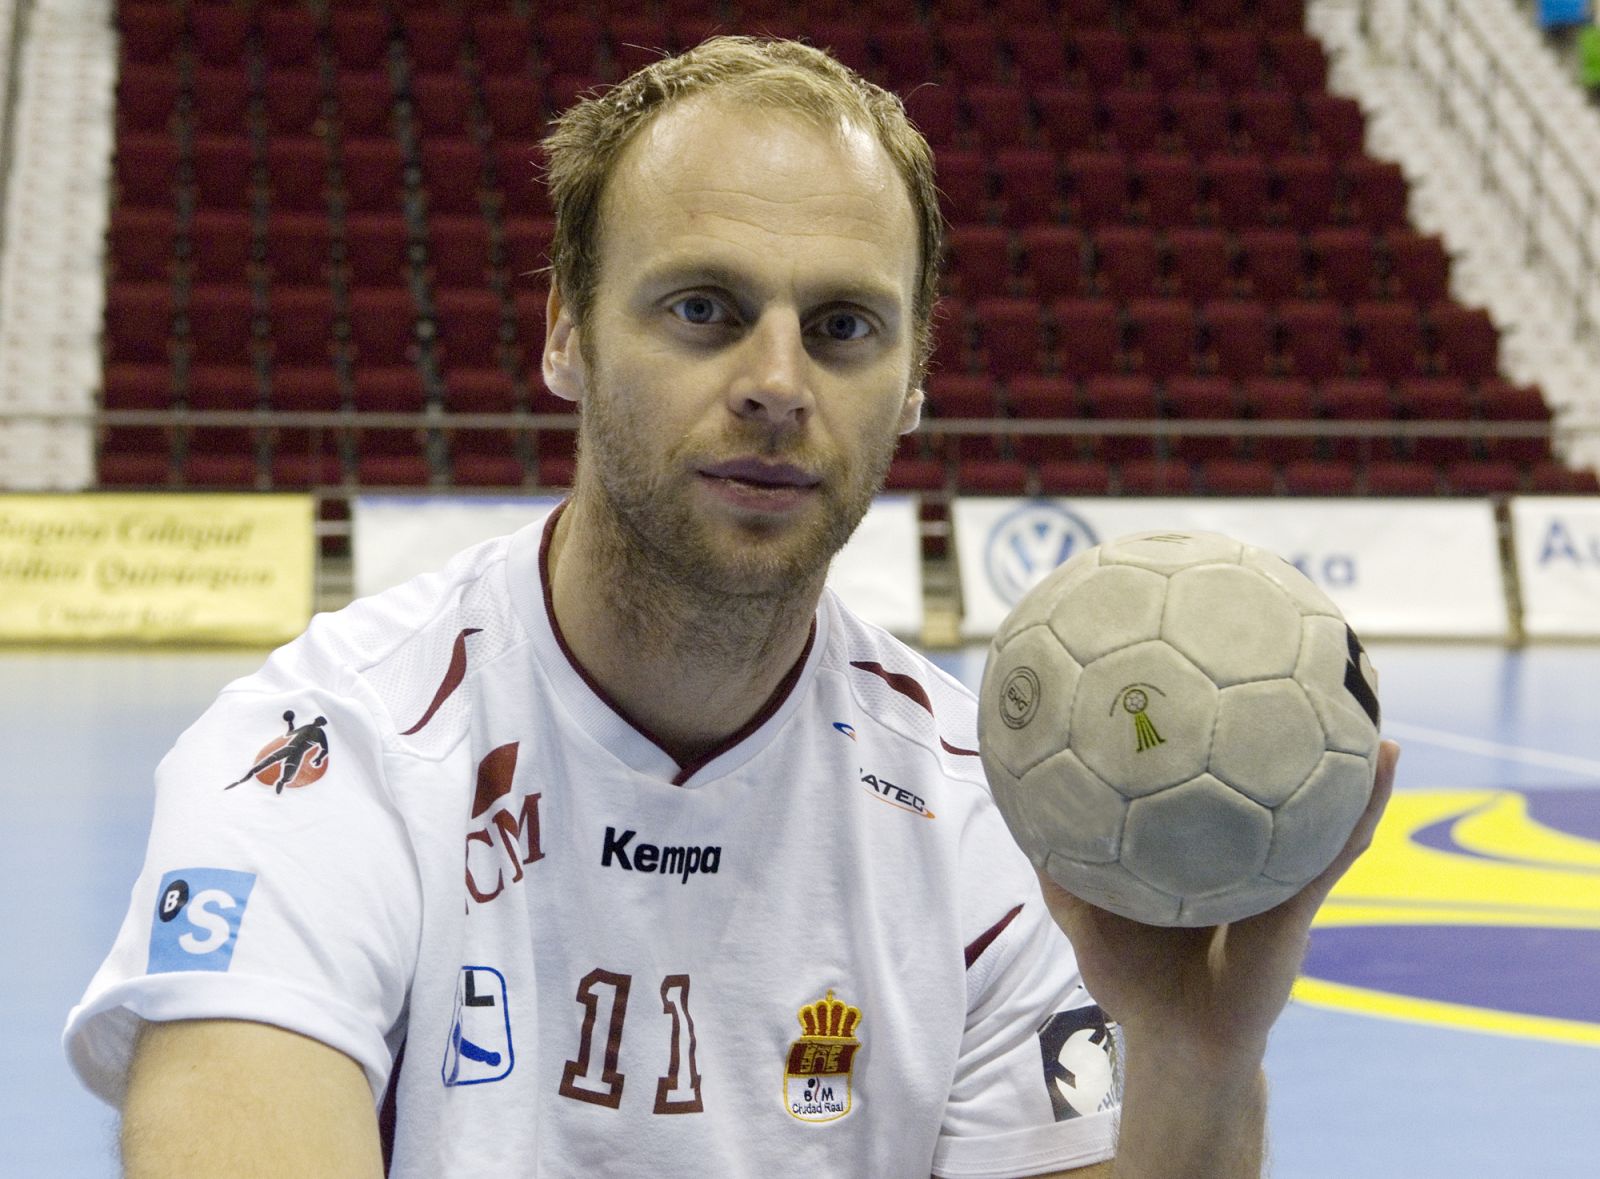 Balonmano: El islandés Stefansson se retira después de 20 años en la ...